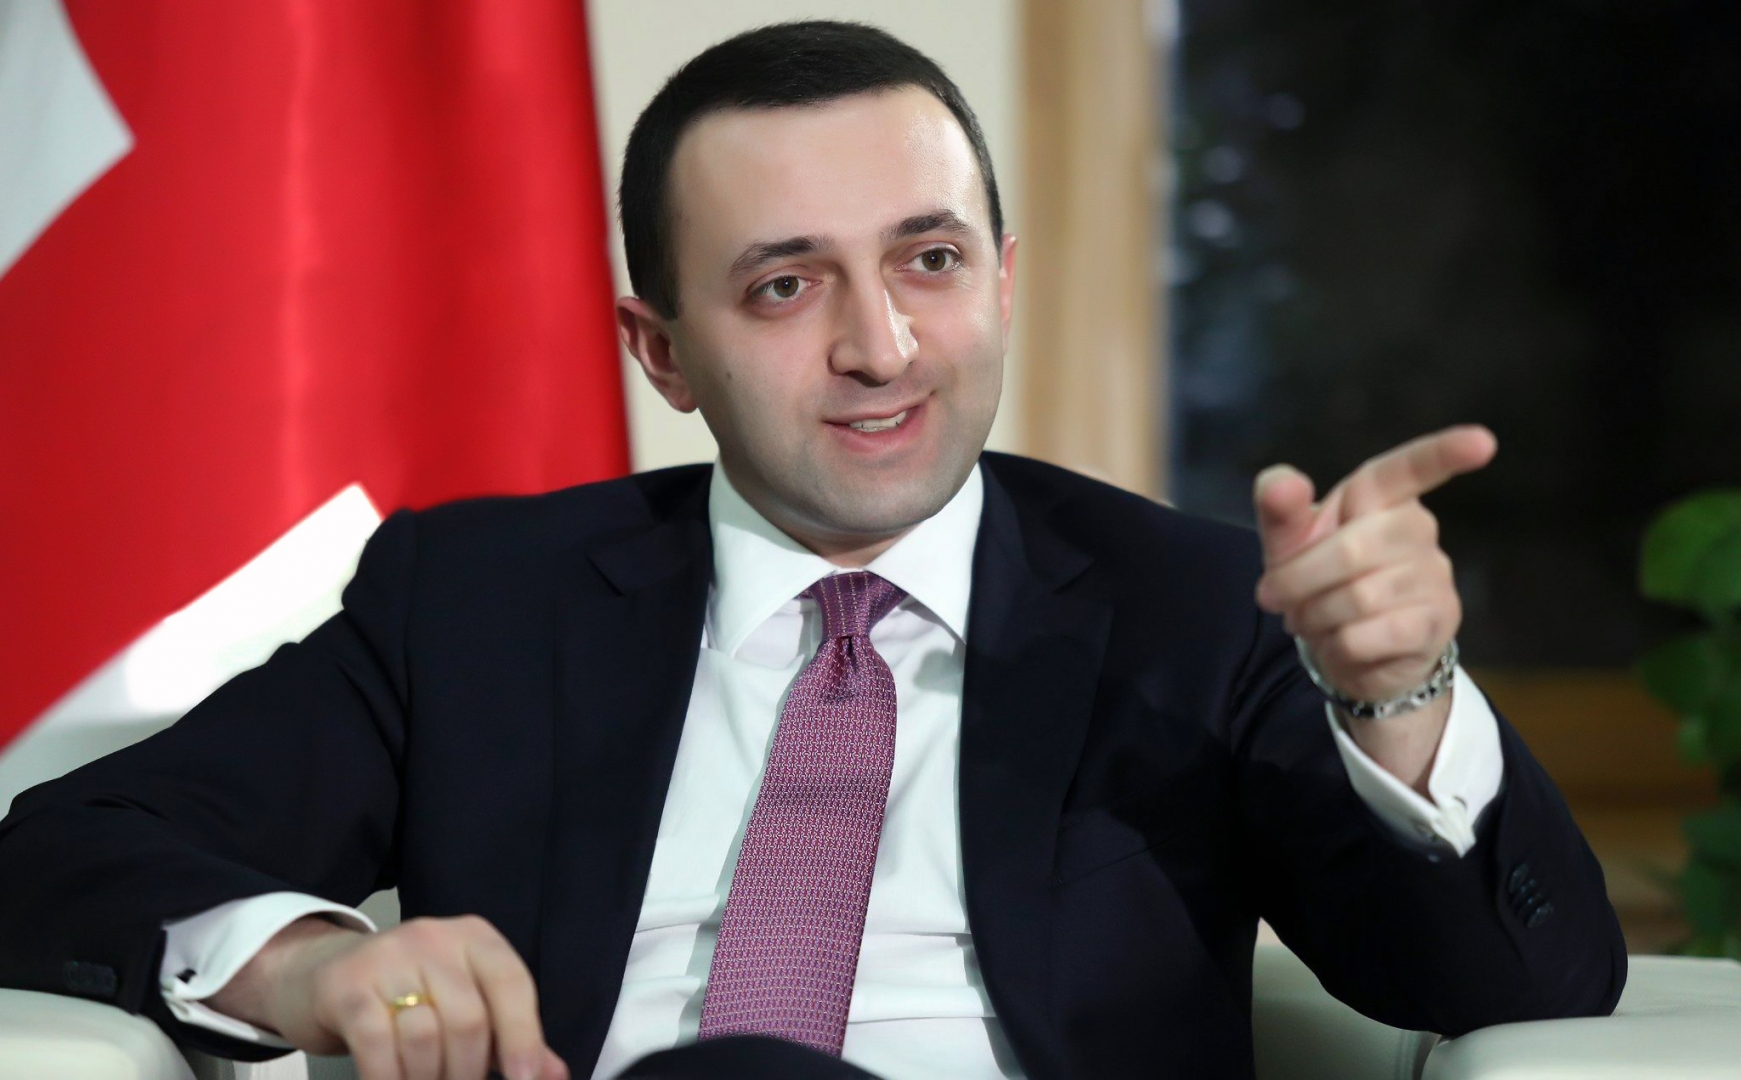 Гарибашвили отрицает, что власти Грузии вели переговоры с Россией 